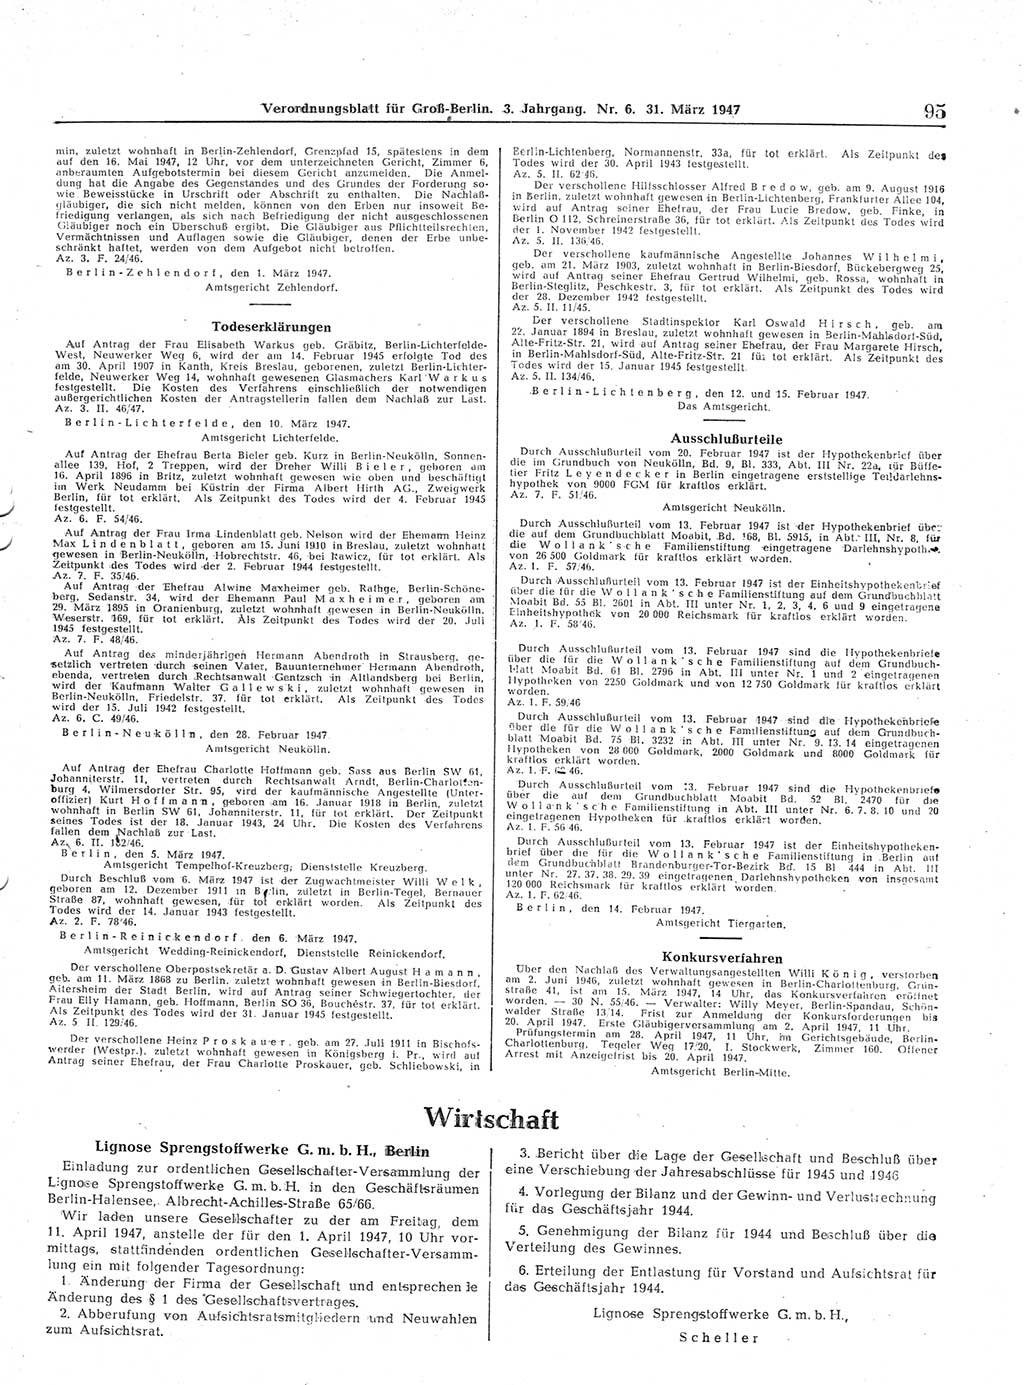 Verordnungsblatt (VOBl.) für Groß-Berlin 1947, Seite 95 (VOBl. Bln. 1947, S. 95)